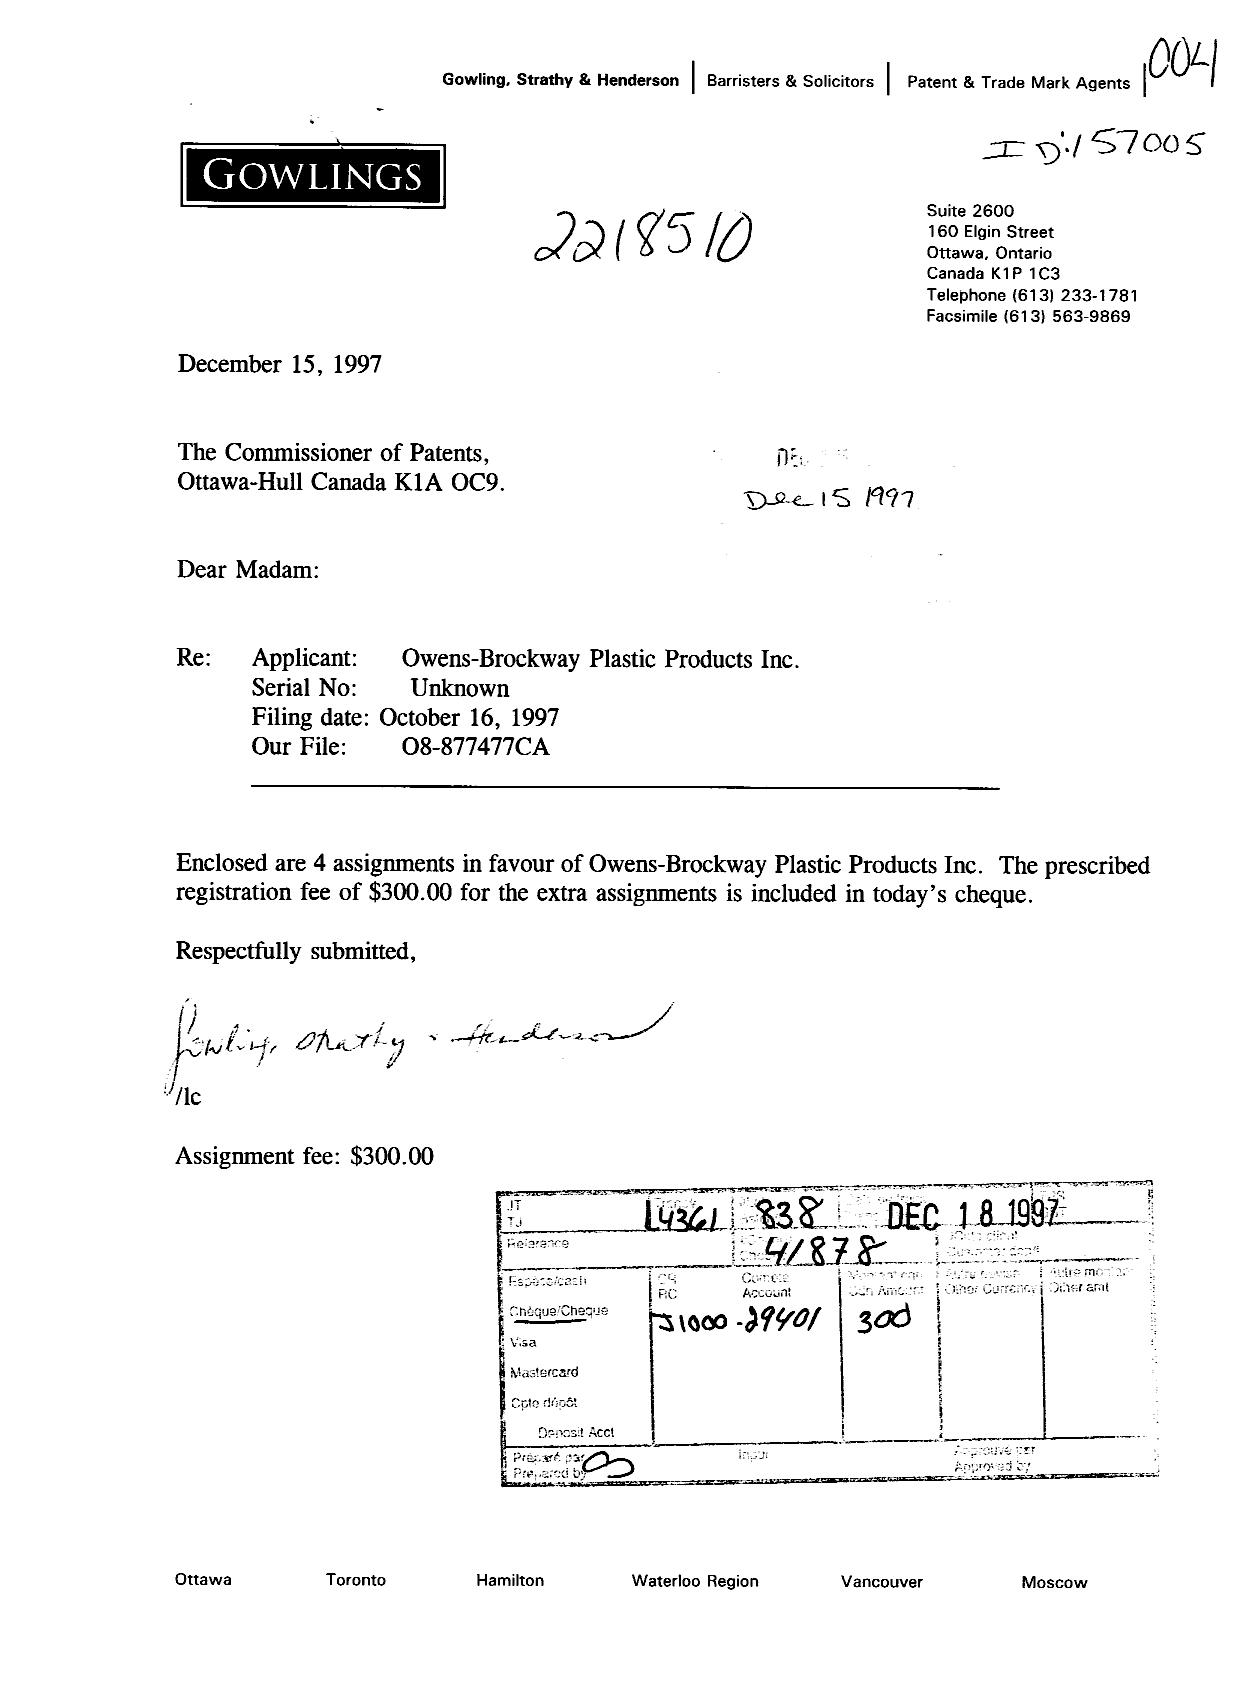 Document de brevet canadien 2218510. Cession 19971215. Image 1 de 6